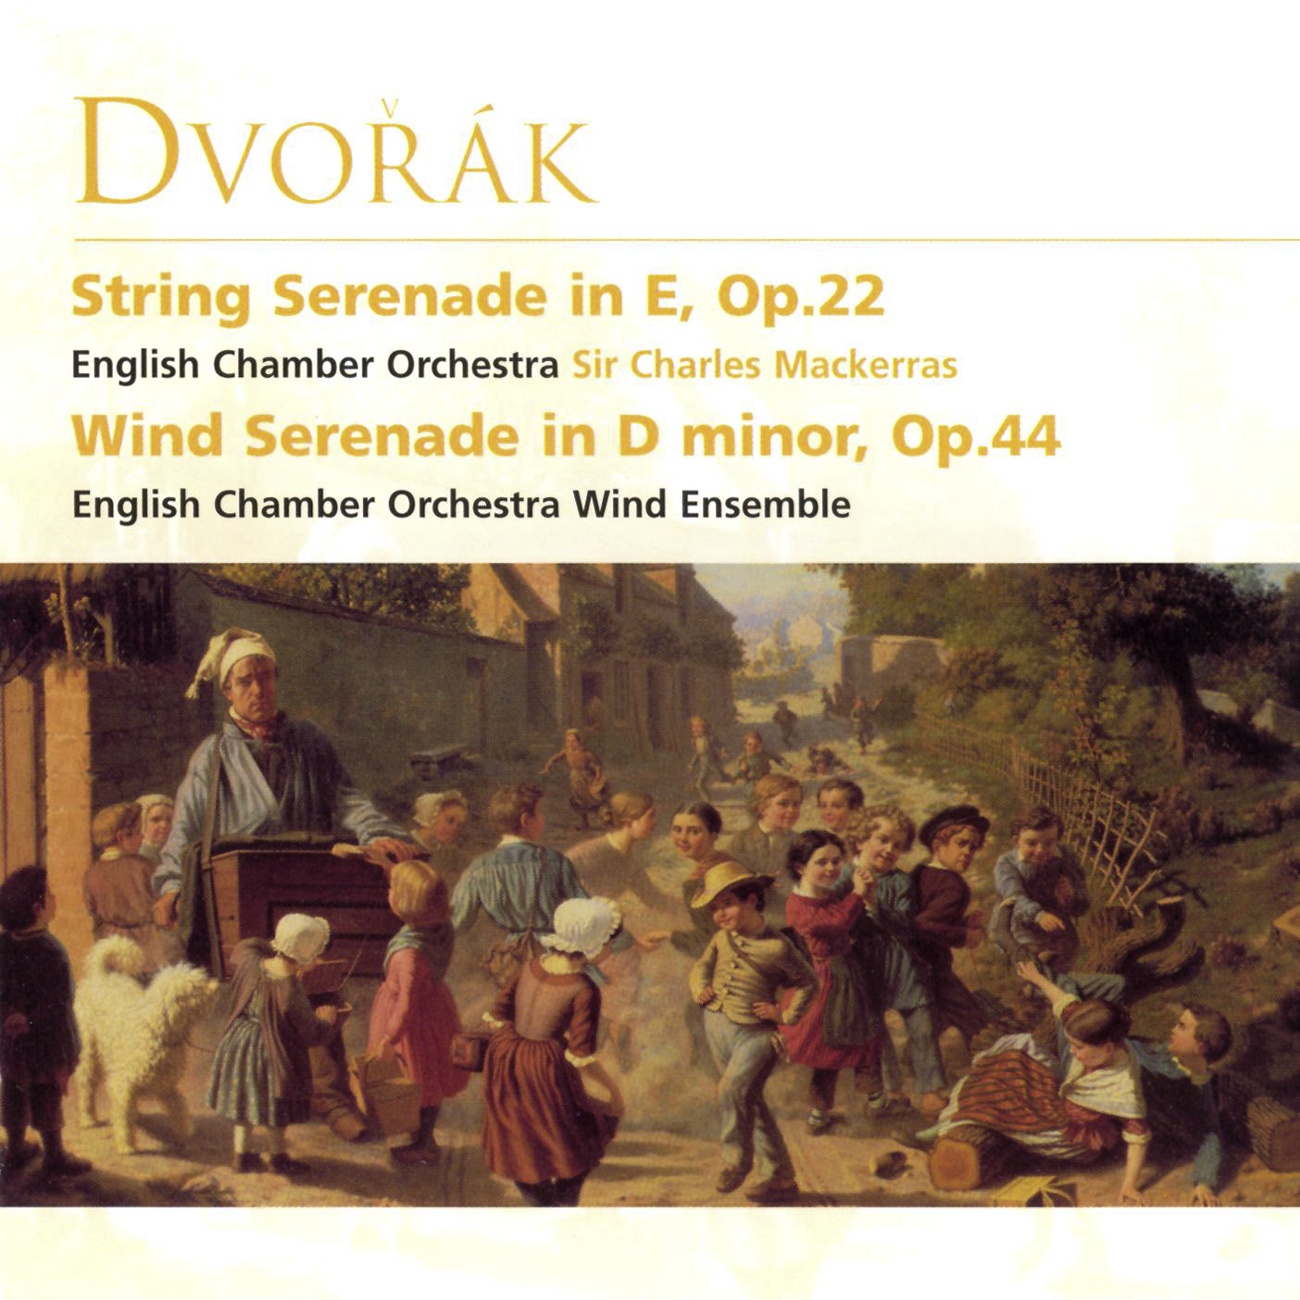 Wind Serenade in D minor B77 ( Op.44): II.      Minuetto - Tempo di minuetto